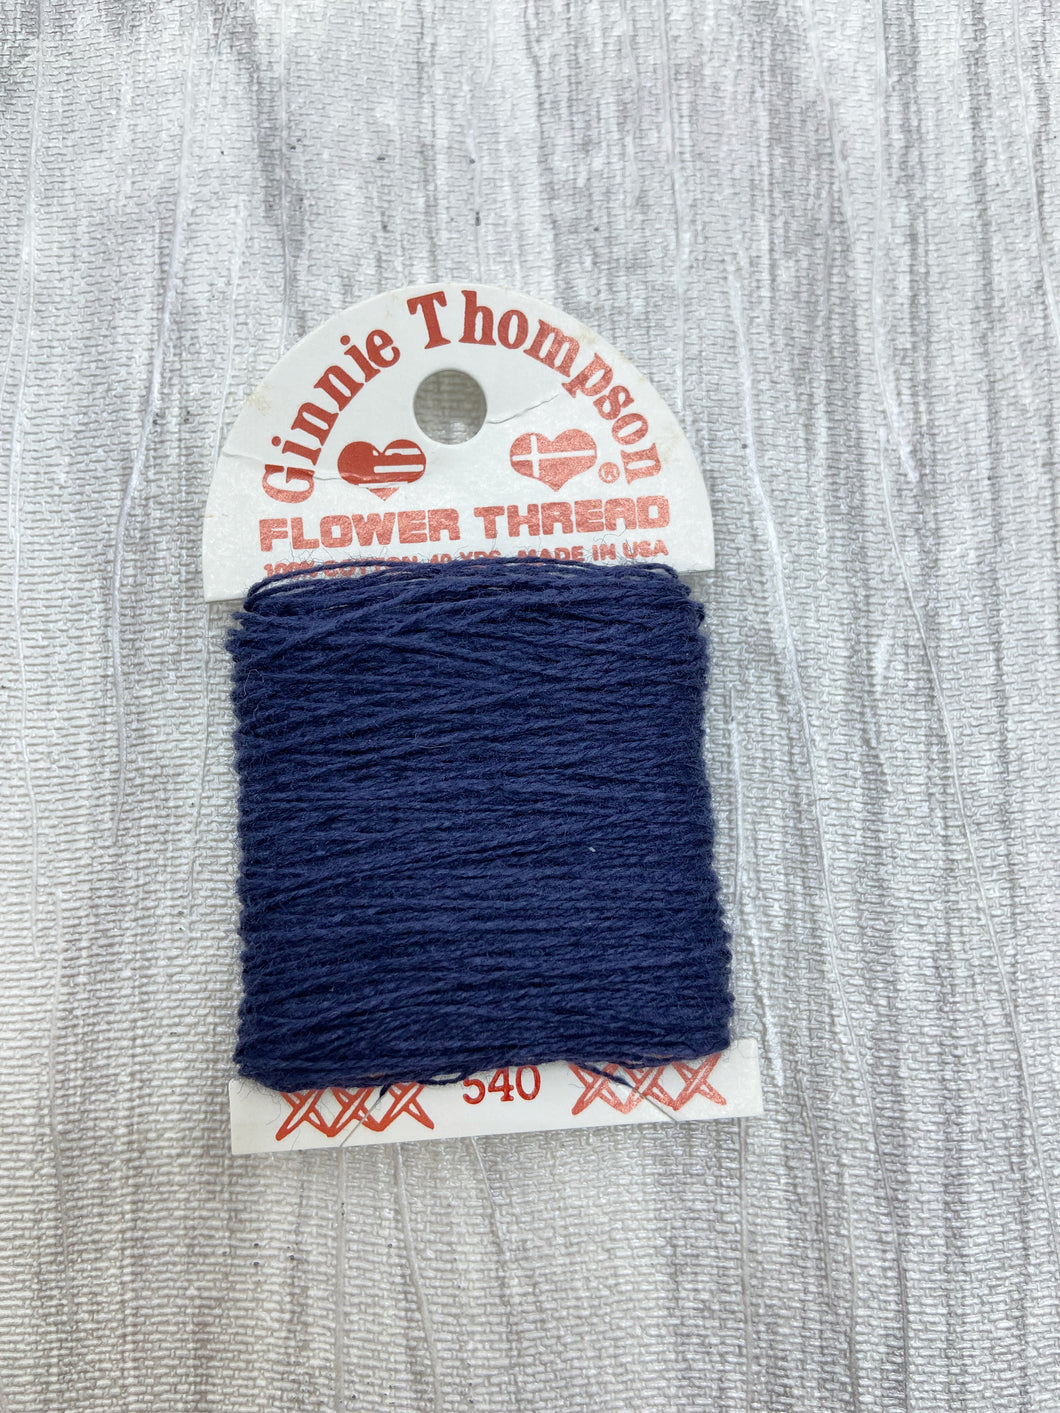 Midnight Blue (540) Ginnie Thompson Flower Thread